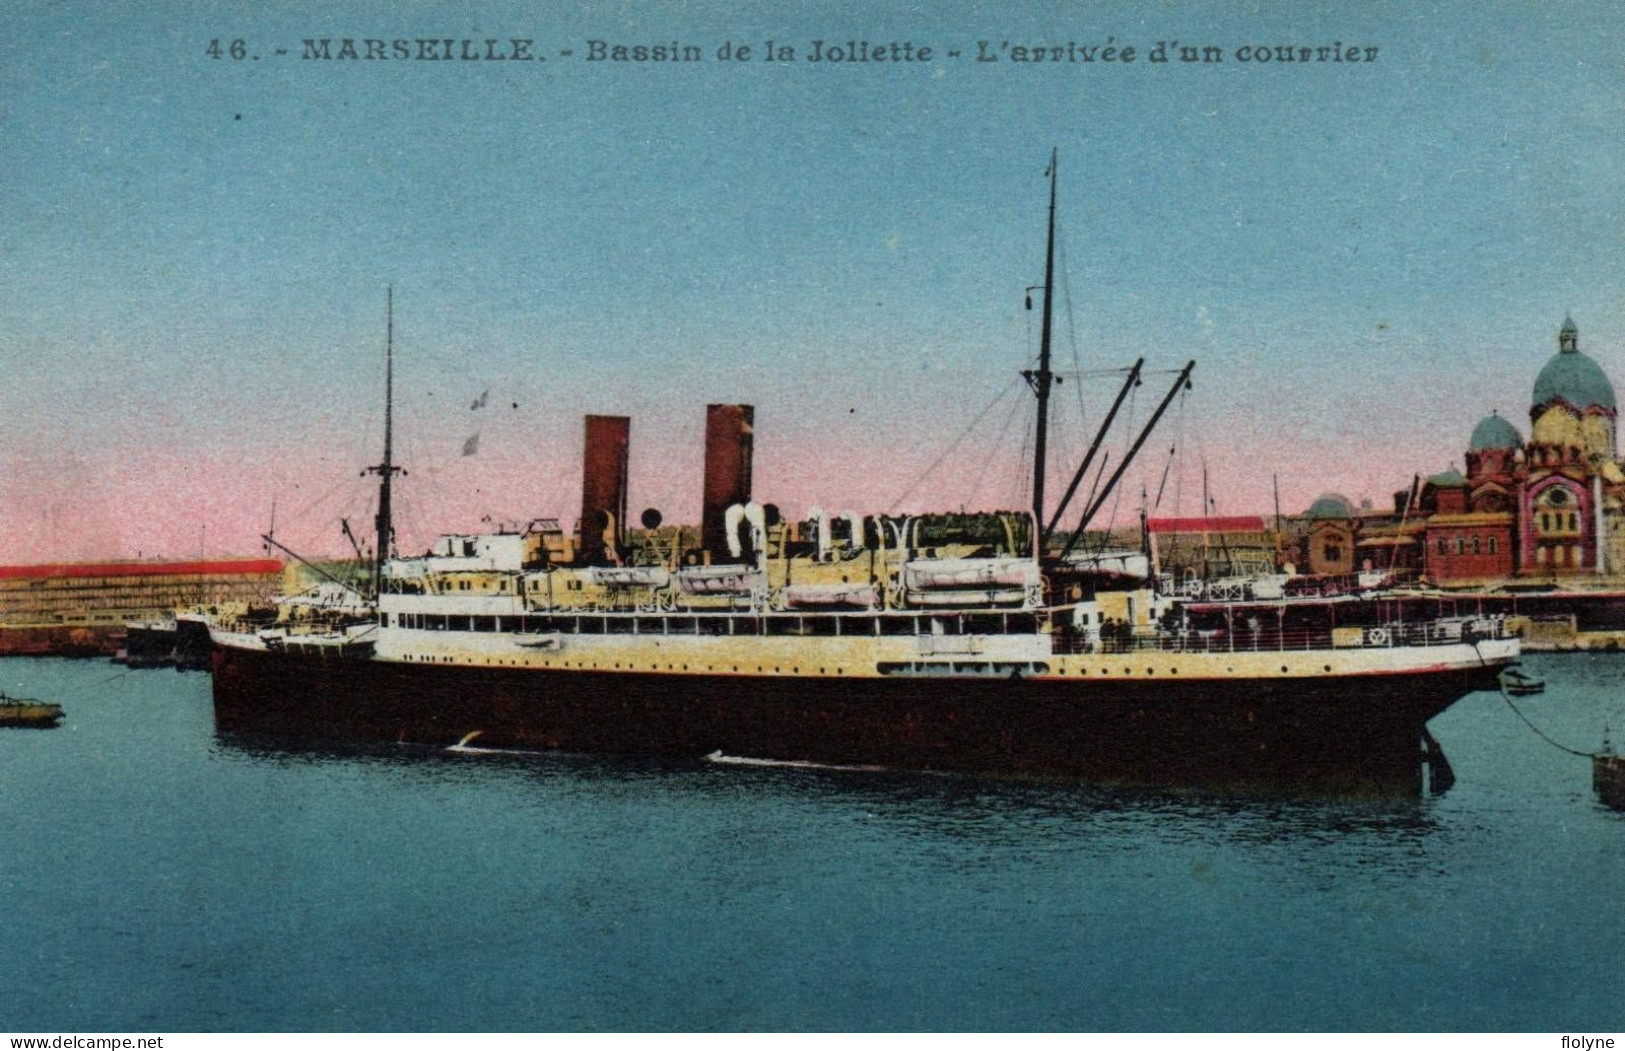 Marseille - Bassin De La Joliette - L'arrivée D'un Courrier - Bateau - Joliette